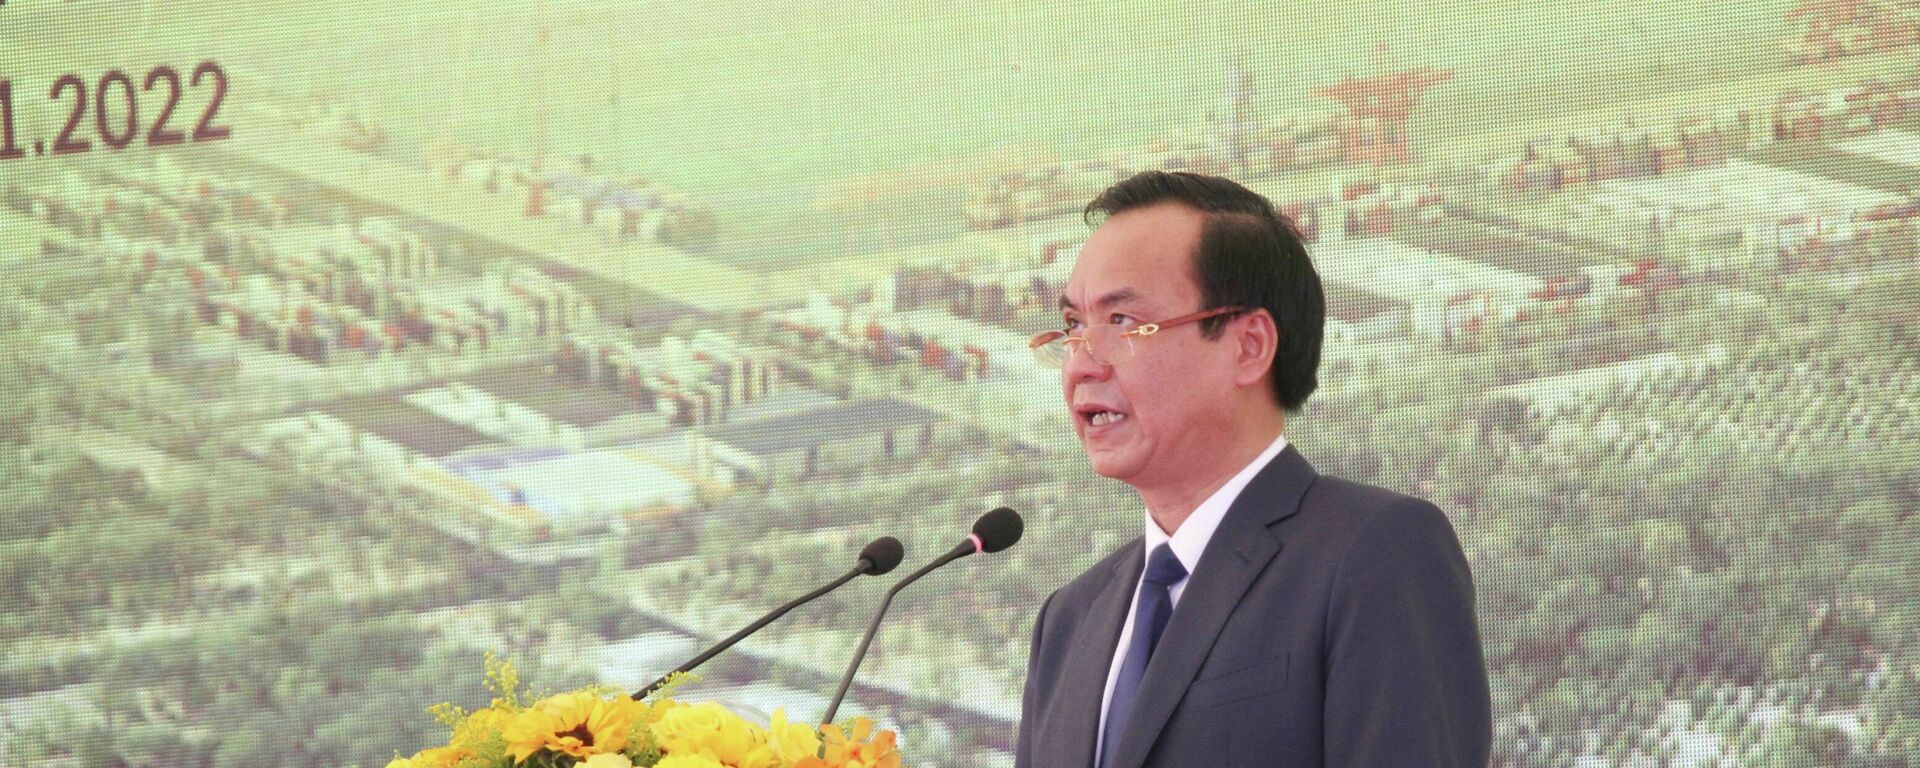 Chủ tịch UBND tỉnh Quảng Trị Võ Văn Hưng phát biểu tại buổi lễ - Sputnik Việt Nam, 1920, 21.02.2022